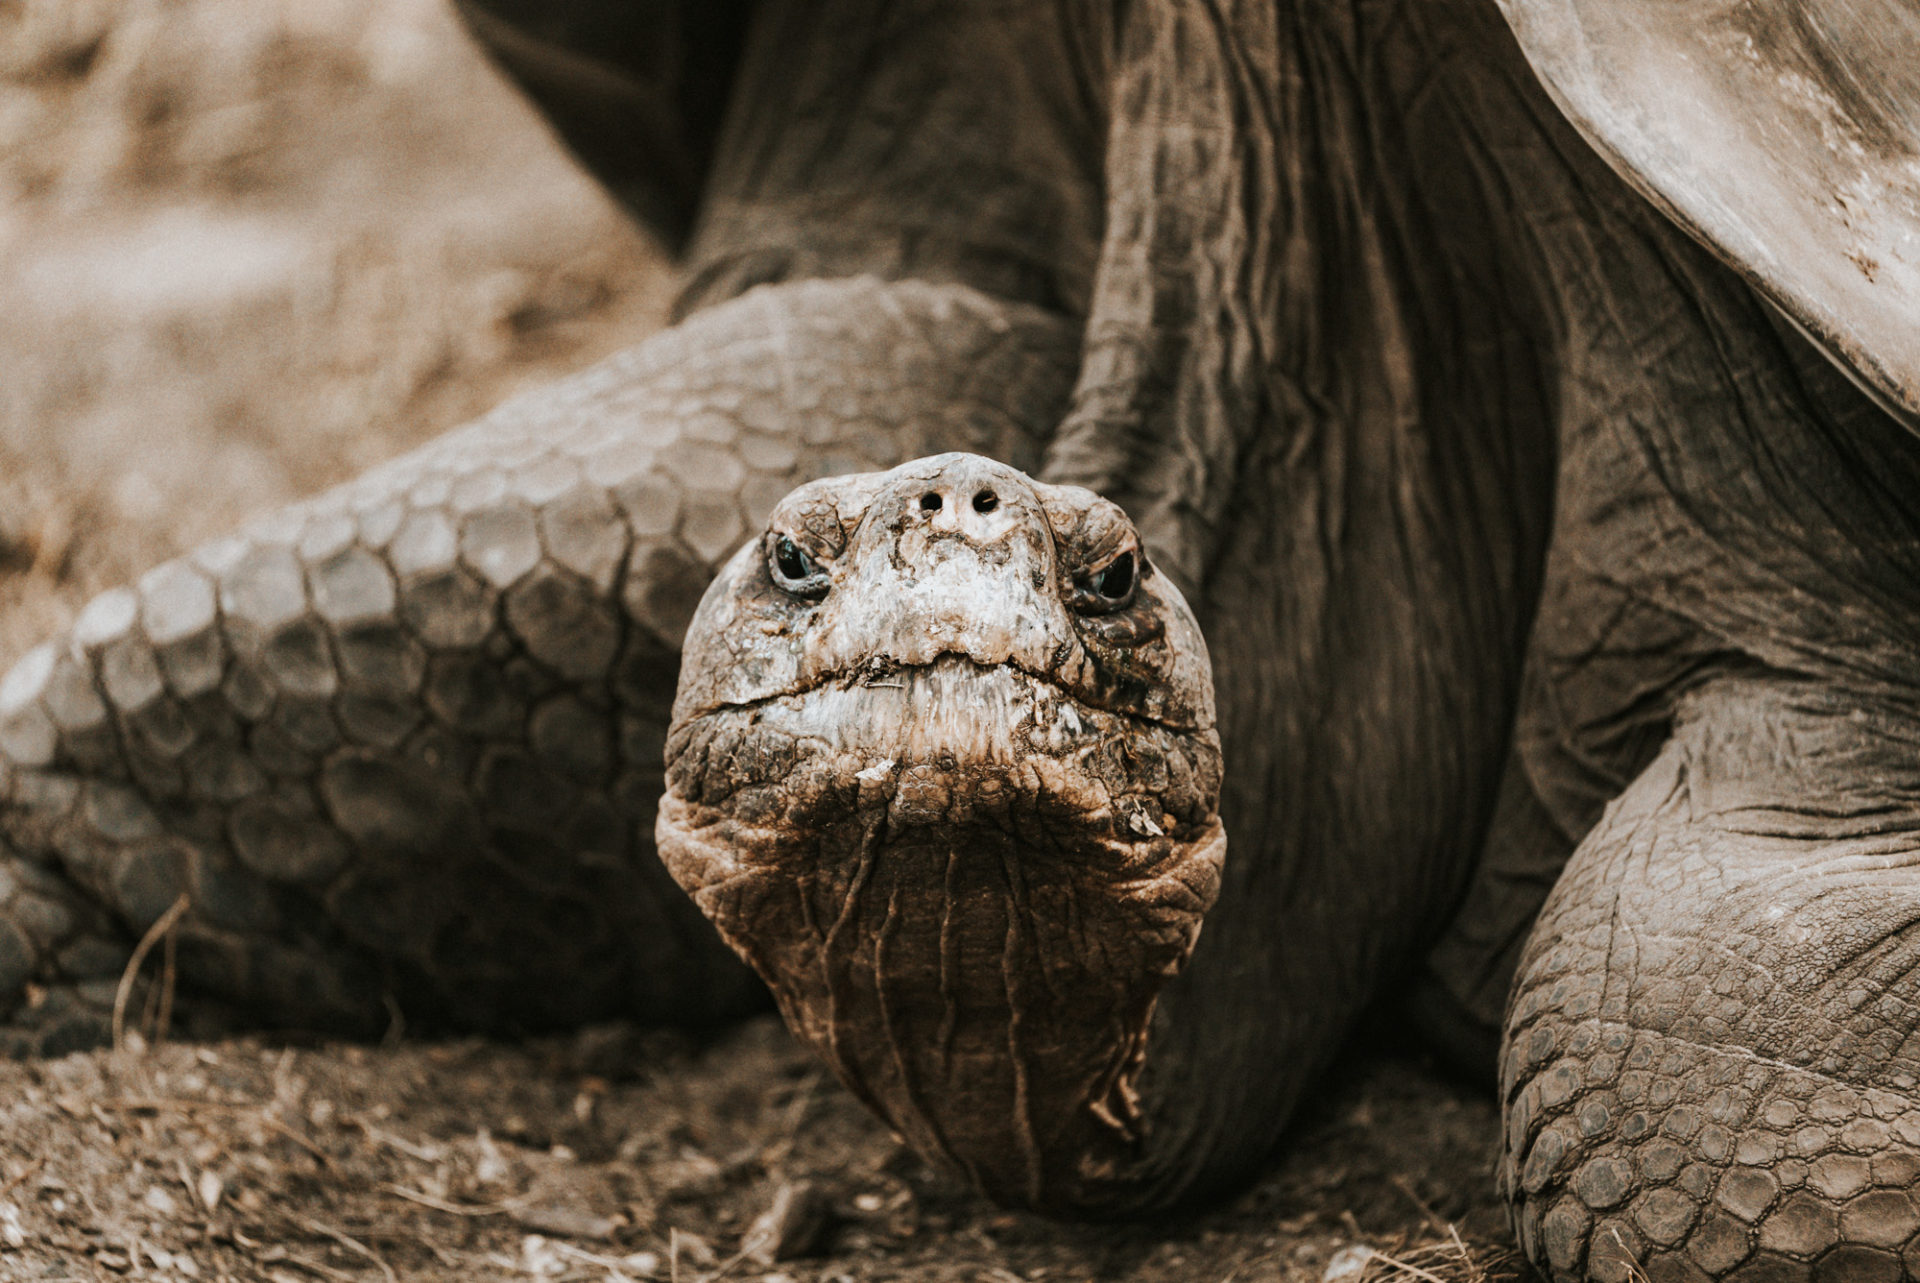 saddleback tortoise, animals of galapagos islands